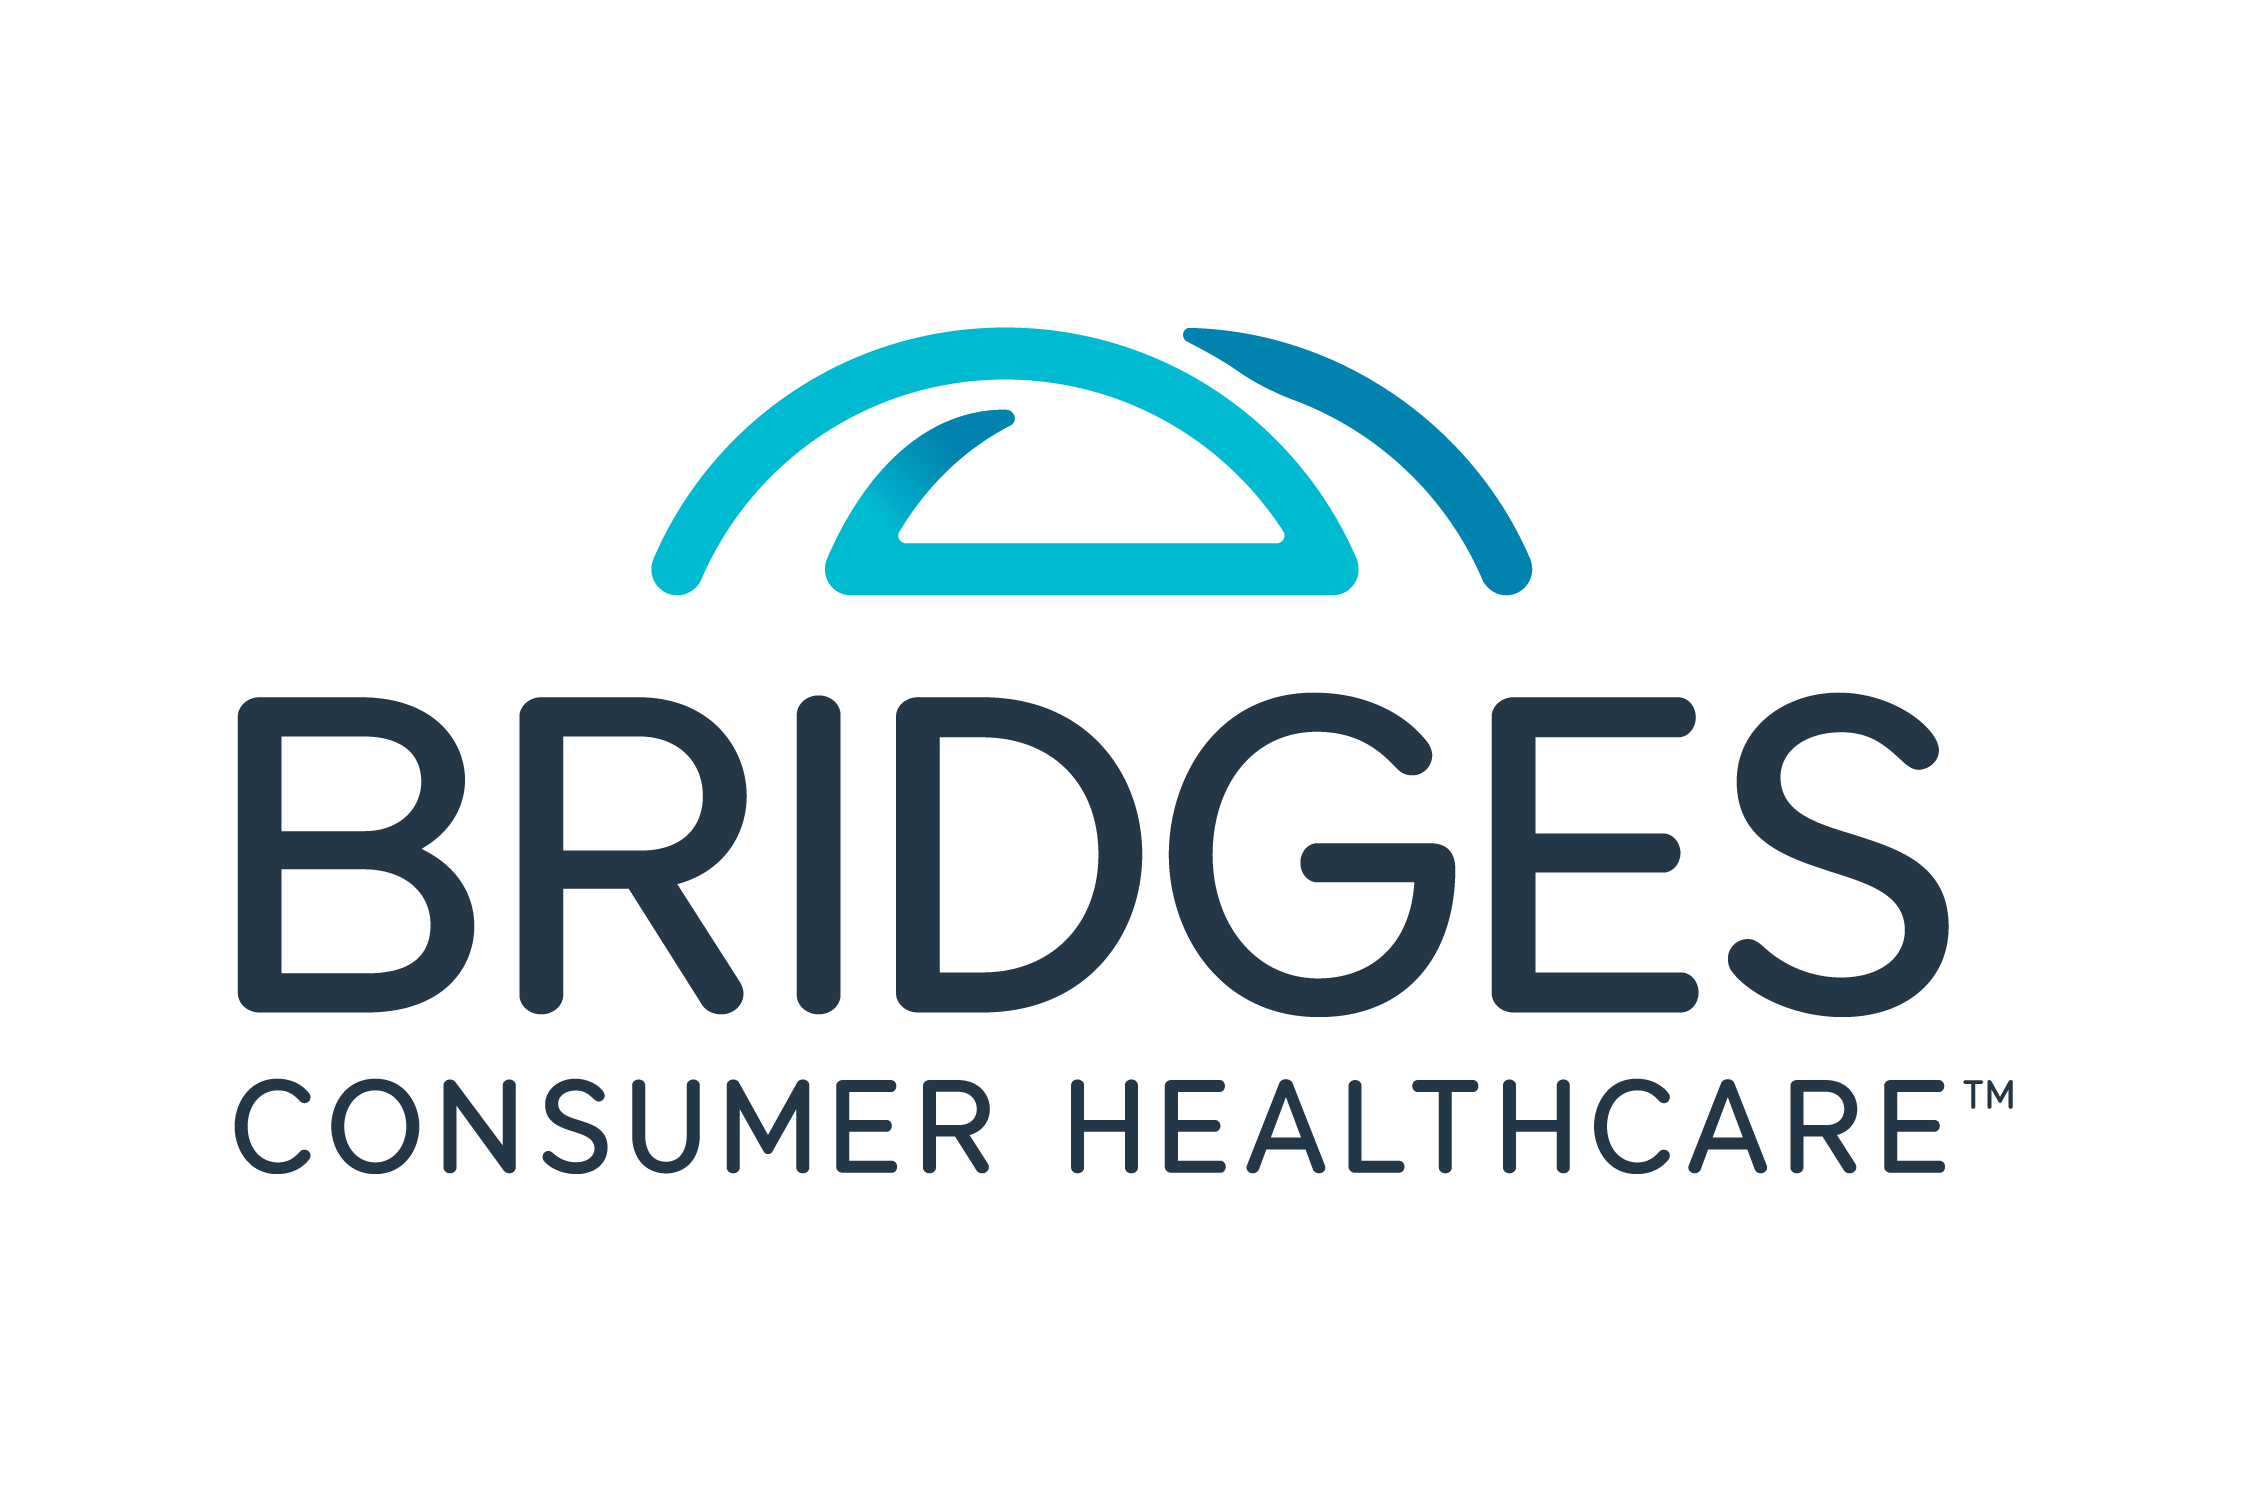 Bridges Consumer Healthcare